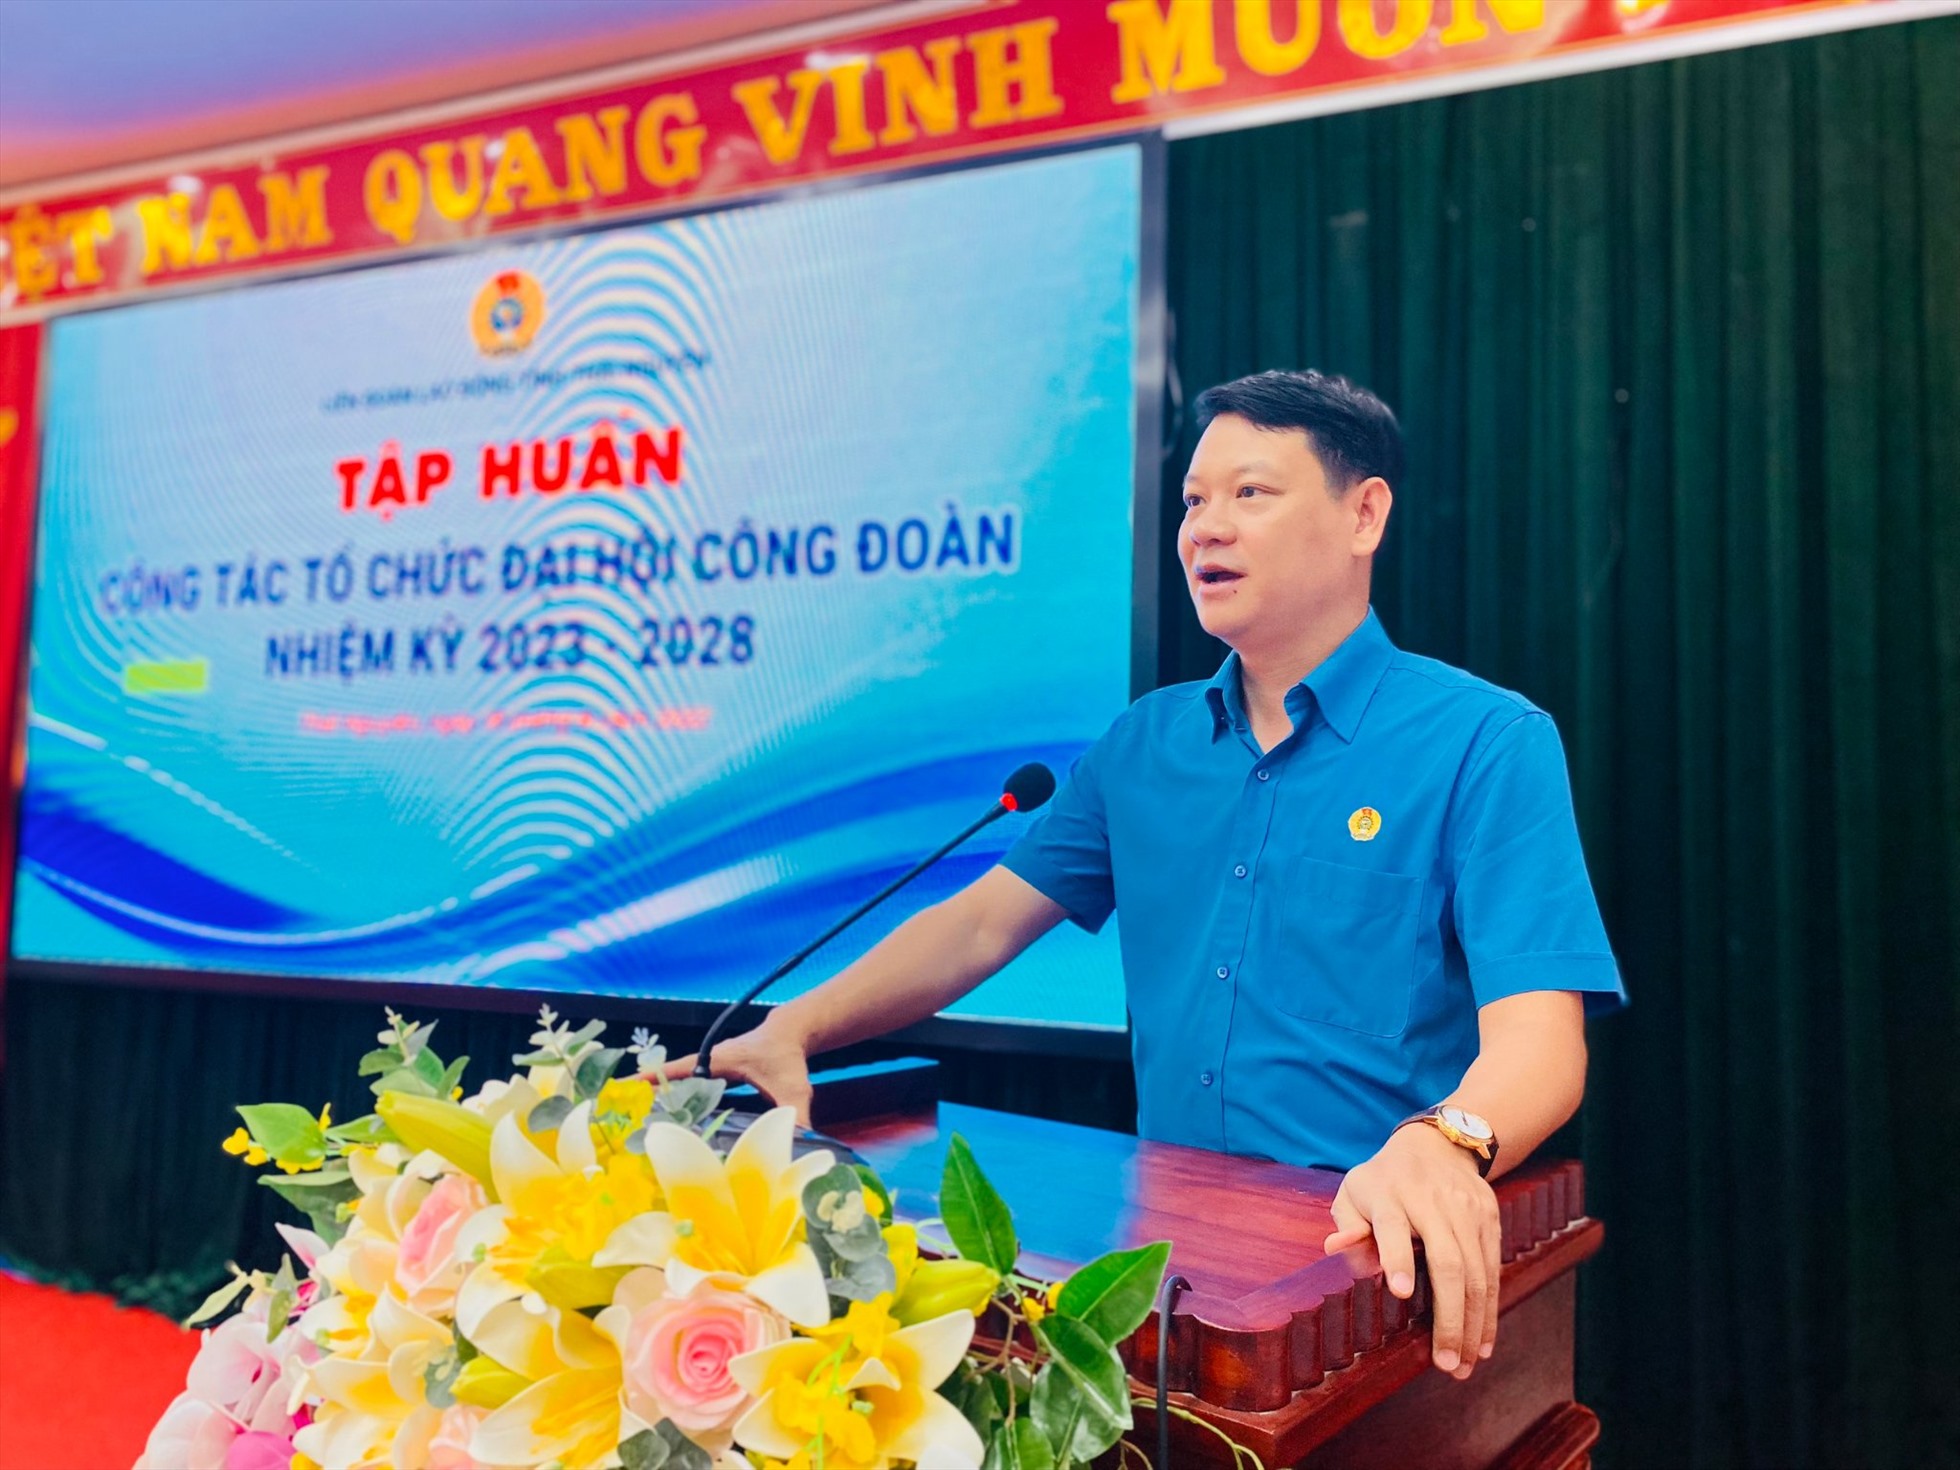 Ông Phạm Việt Dũng - Chủ tịch LĐLĐ tỉnh Thái Nguyên, phát biểu tại Hội nghị Tập huấn. Ảnh: LĐLĐ Thái Nguyên